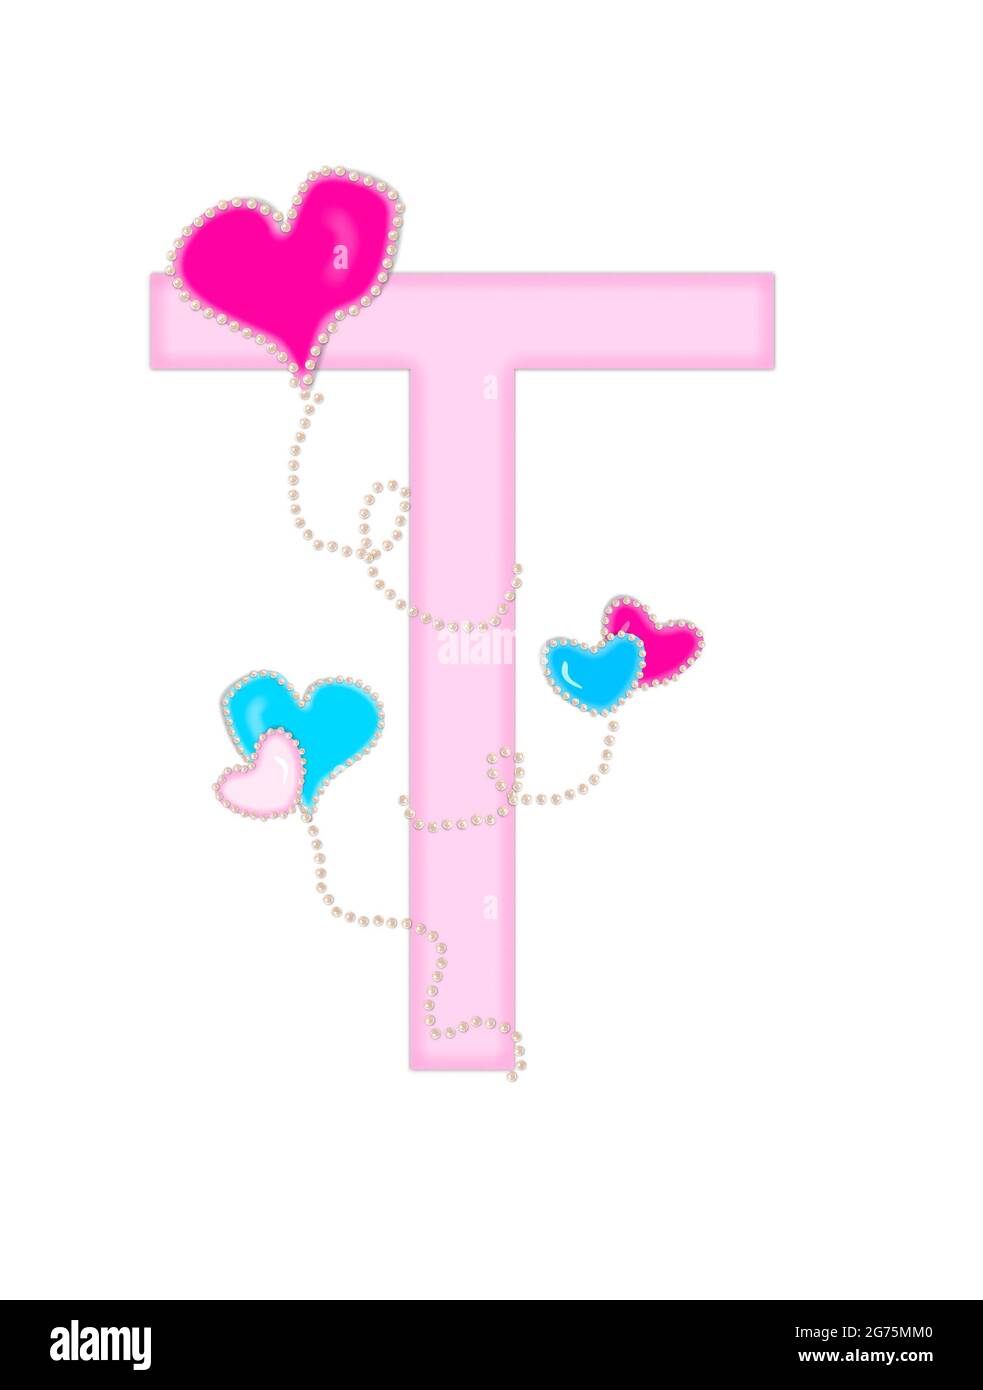 La lettre T, dans l'ensemble d'alphabet « Heart of Valentine », est rose pâle. Ballons en forme de coeur, avec perles nacrées, flottent sur la lettre. Long, curly St Banque D'Images